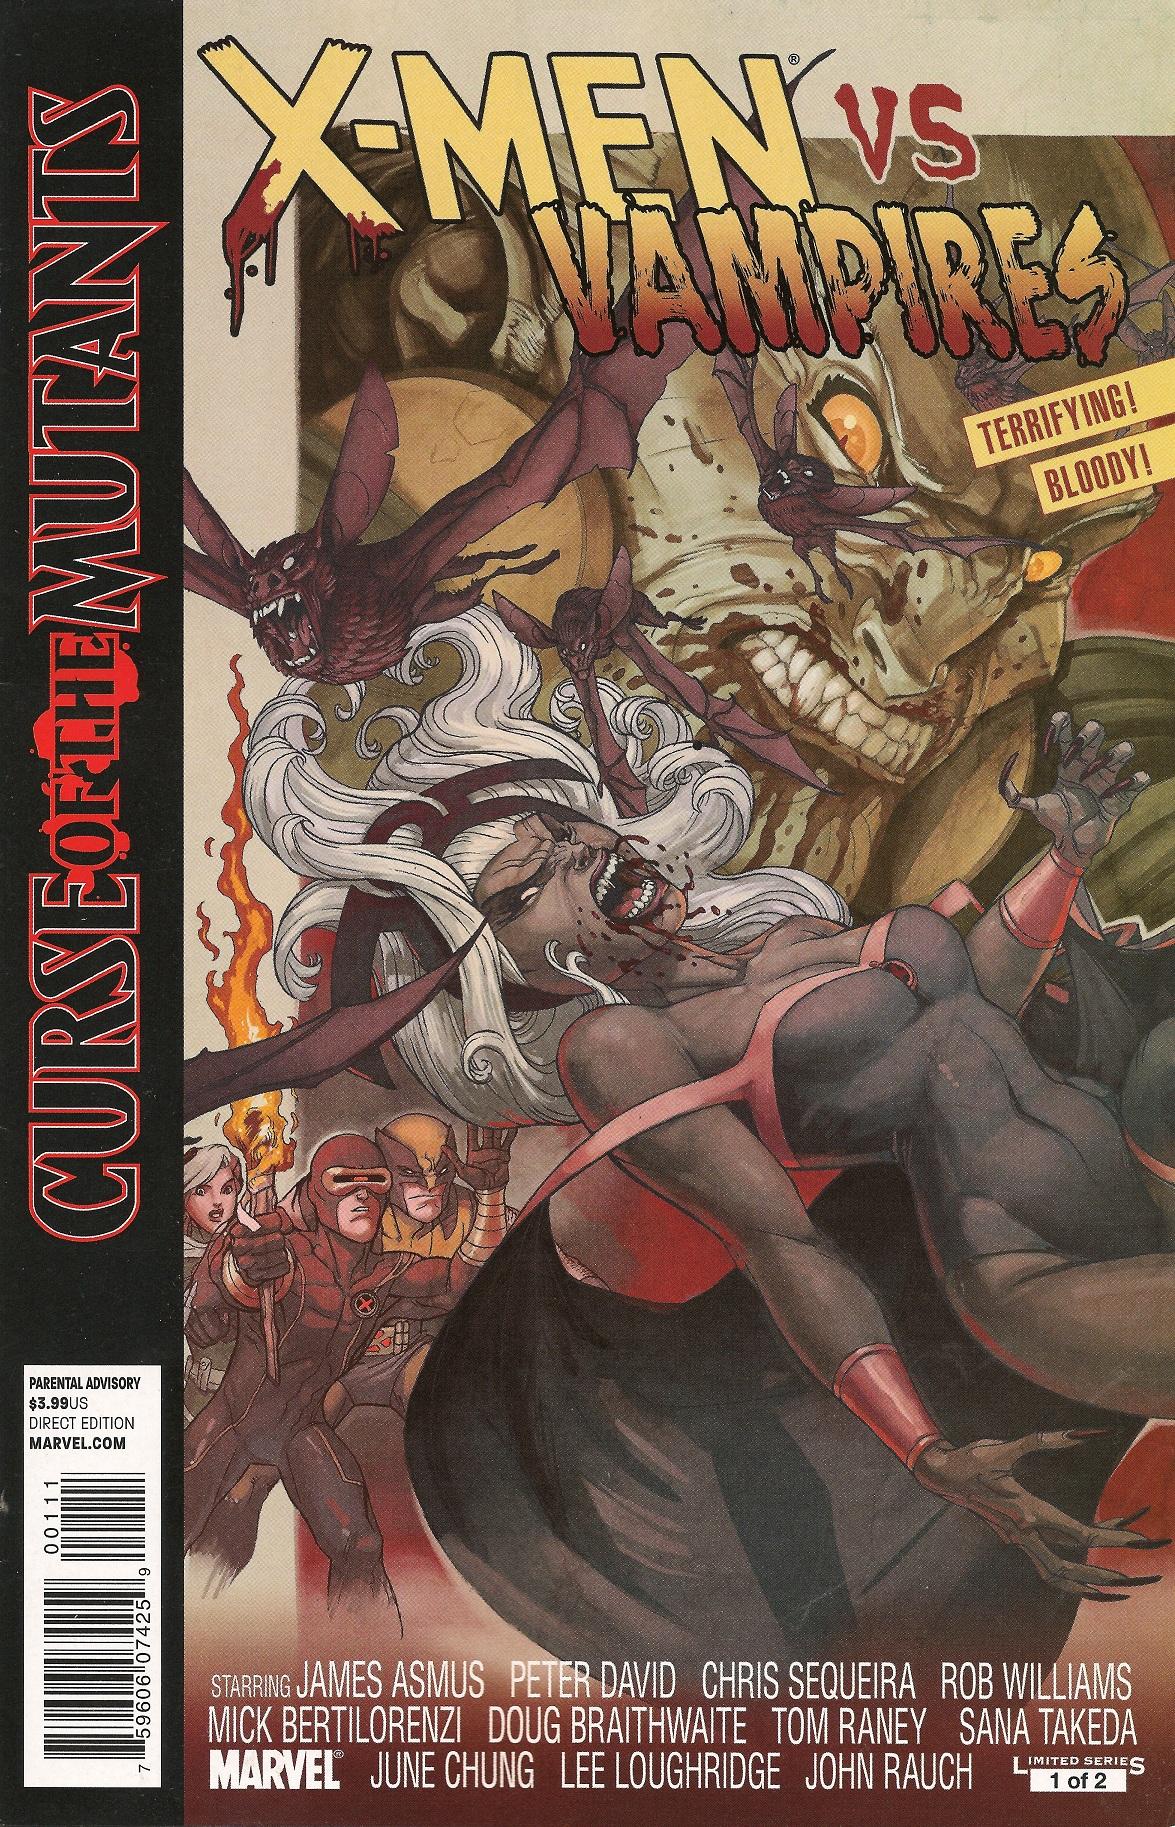 X-Men: Curse of the Mutants - X-Men vs. Vampires Vol. 1 #1